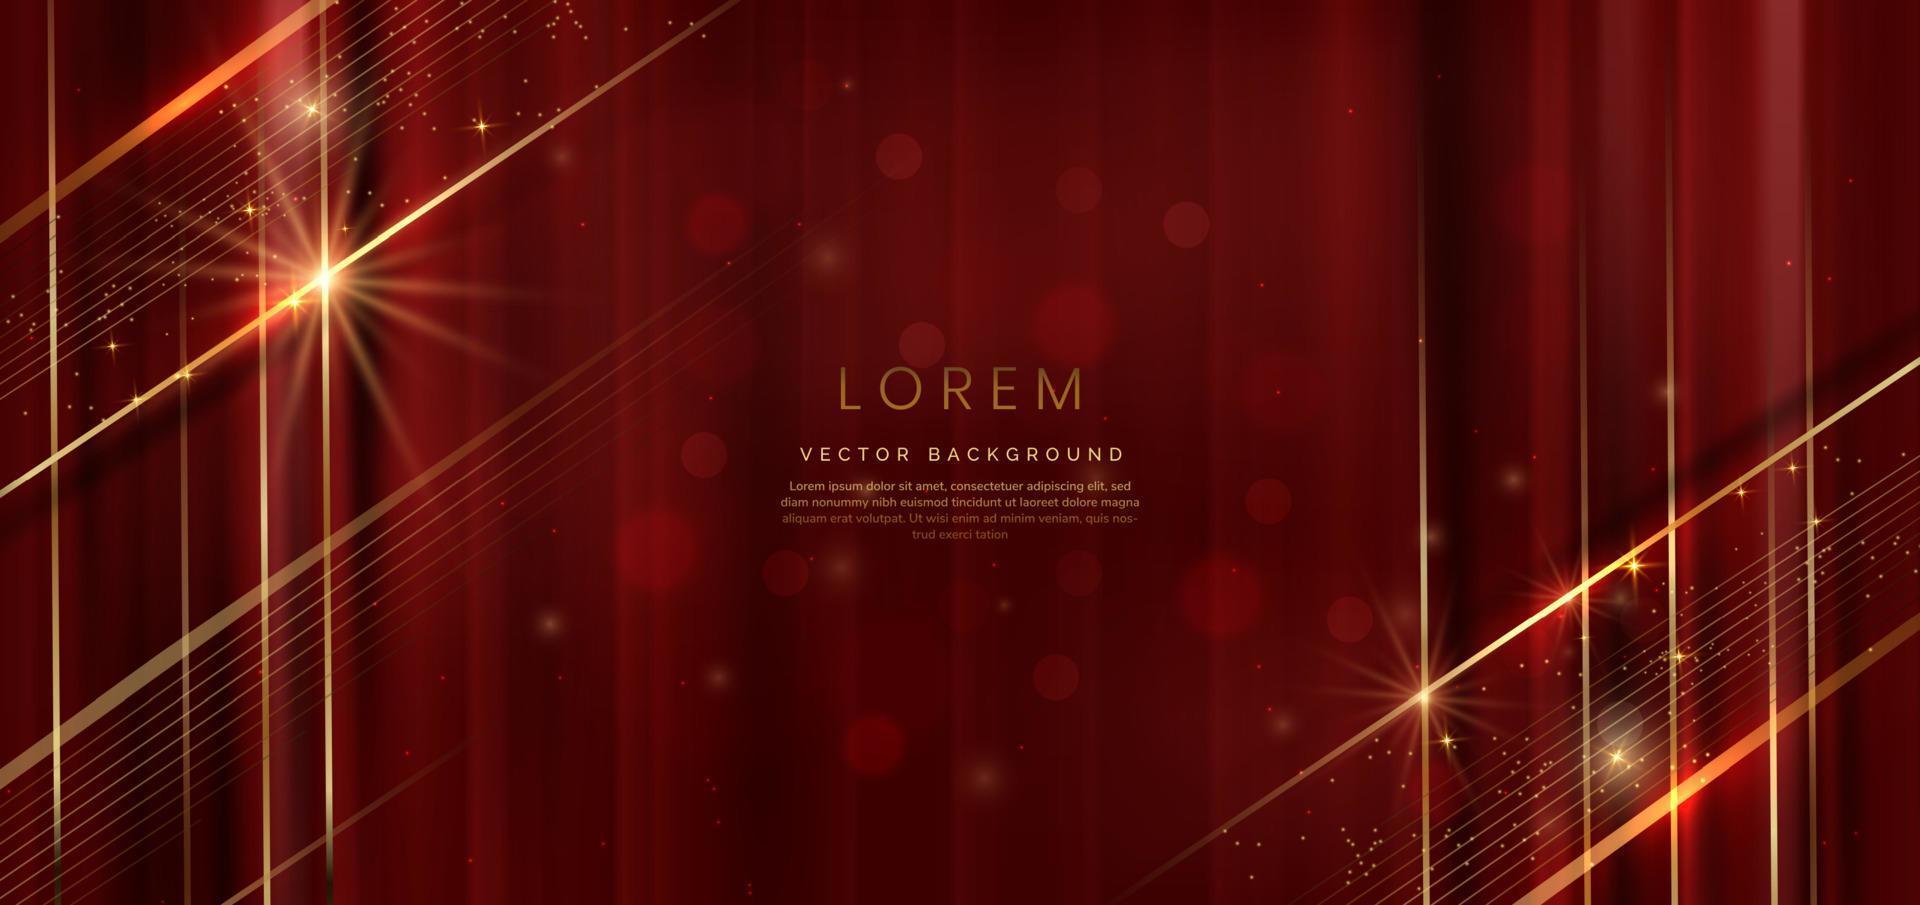 fondo rojo elegante abstracto con línea dorada y brillo de efecto de iluminación. diseño de plantilla de lujo. vector